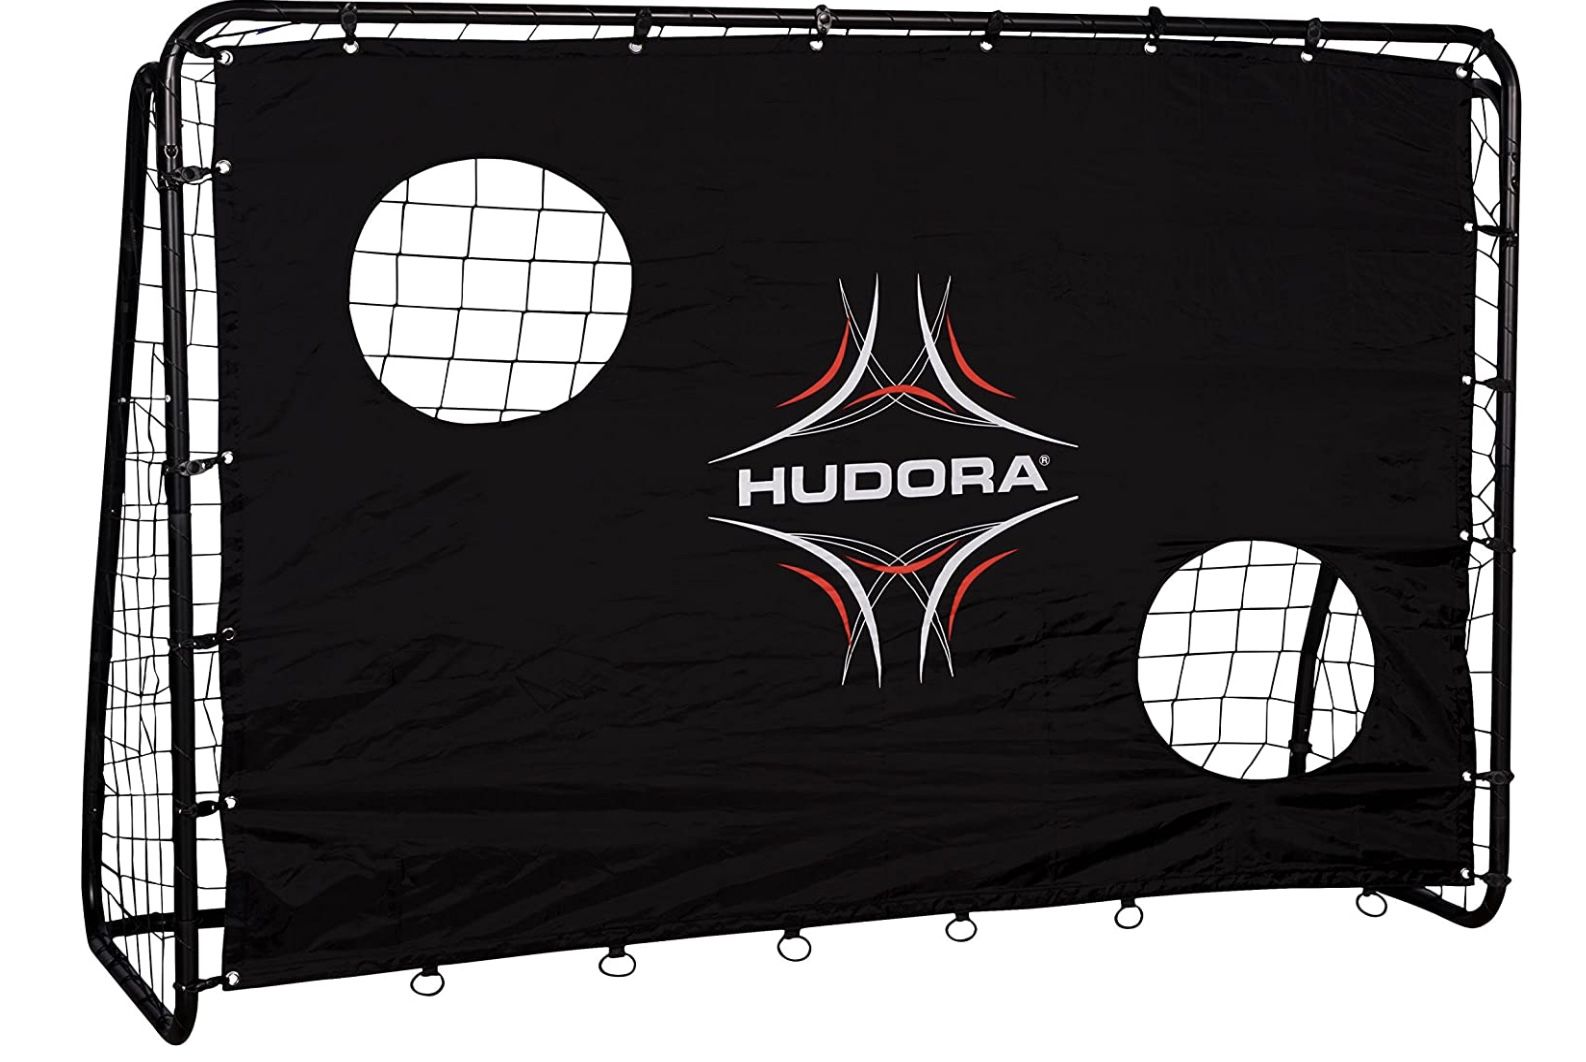 Hudora 76922   Fuball Tor Freekick mit Torwand für 51,98€ (statt 65€)